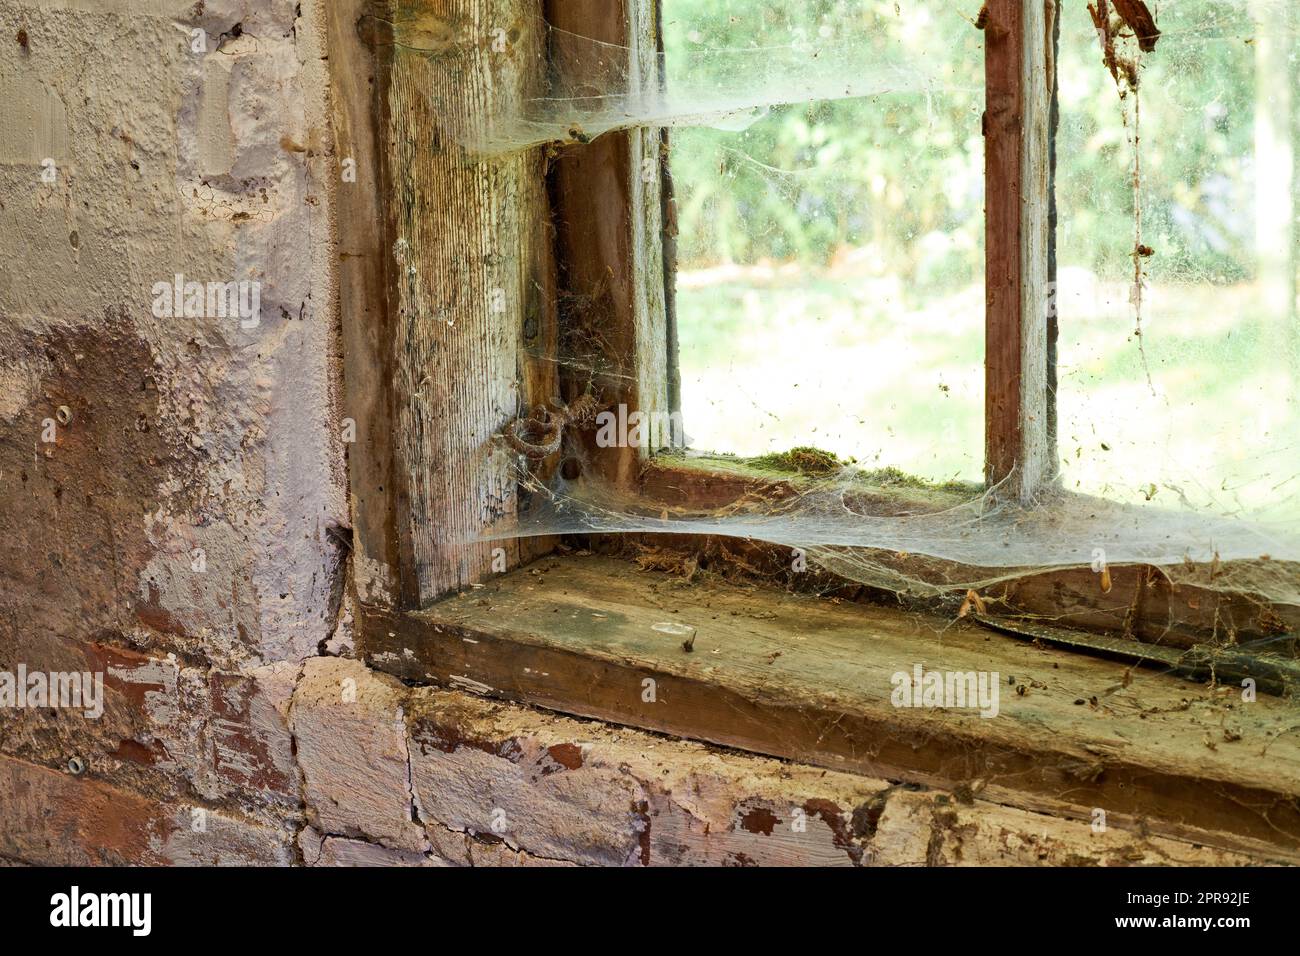 Vista interna di un'antica casa che ha bisogno di TLC. Una vecchia finestra con polvere e ragnatele in una casa abbandonata all'interno. Dettagli architettonici di un telaio del davanzale con texture rustiche danneggiate. Foto Stock